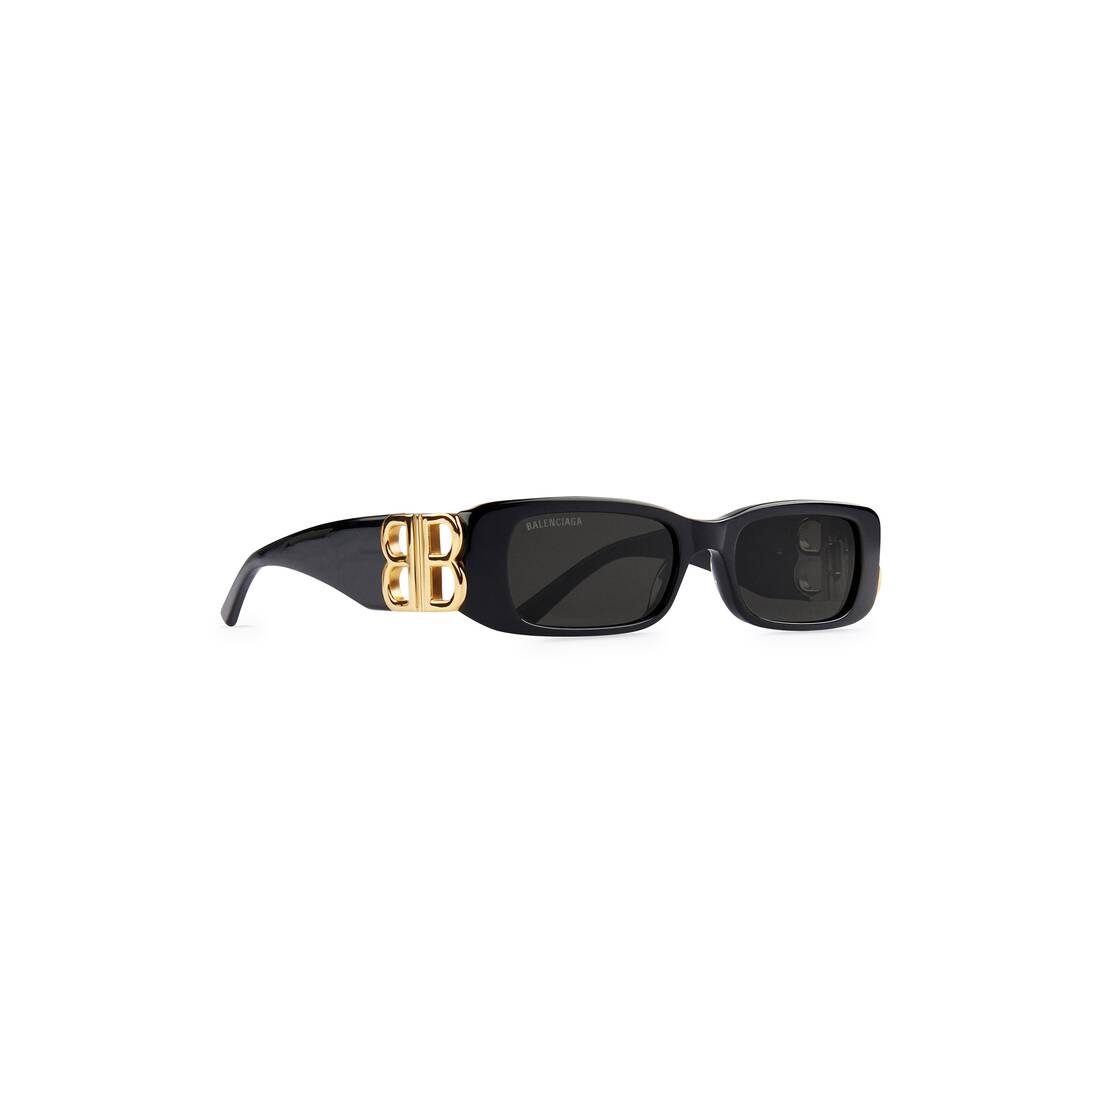 discount 71% Black M WOMEN FASHION Accessories Sunglasses NoName Black sunglasses 